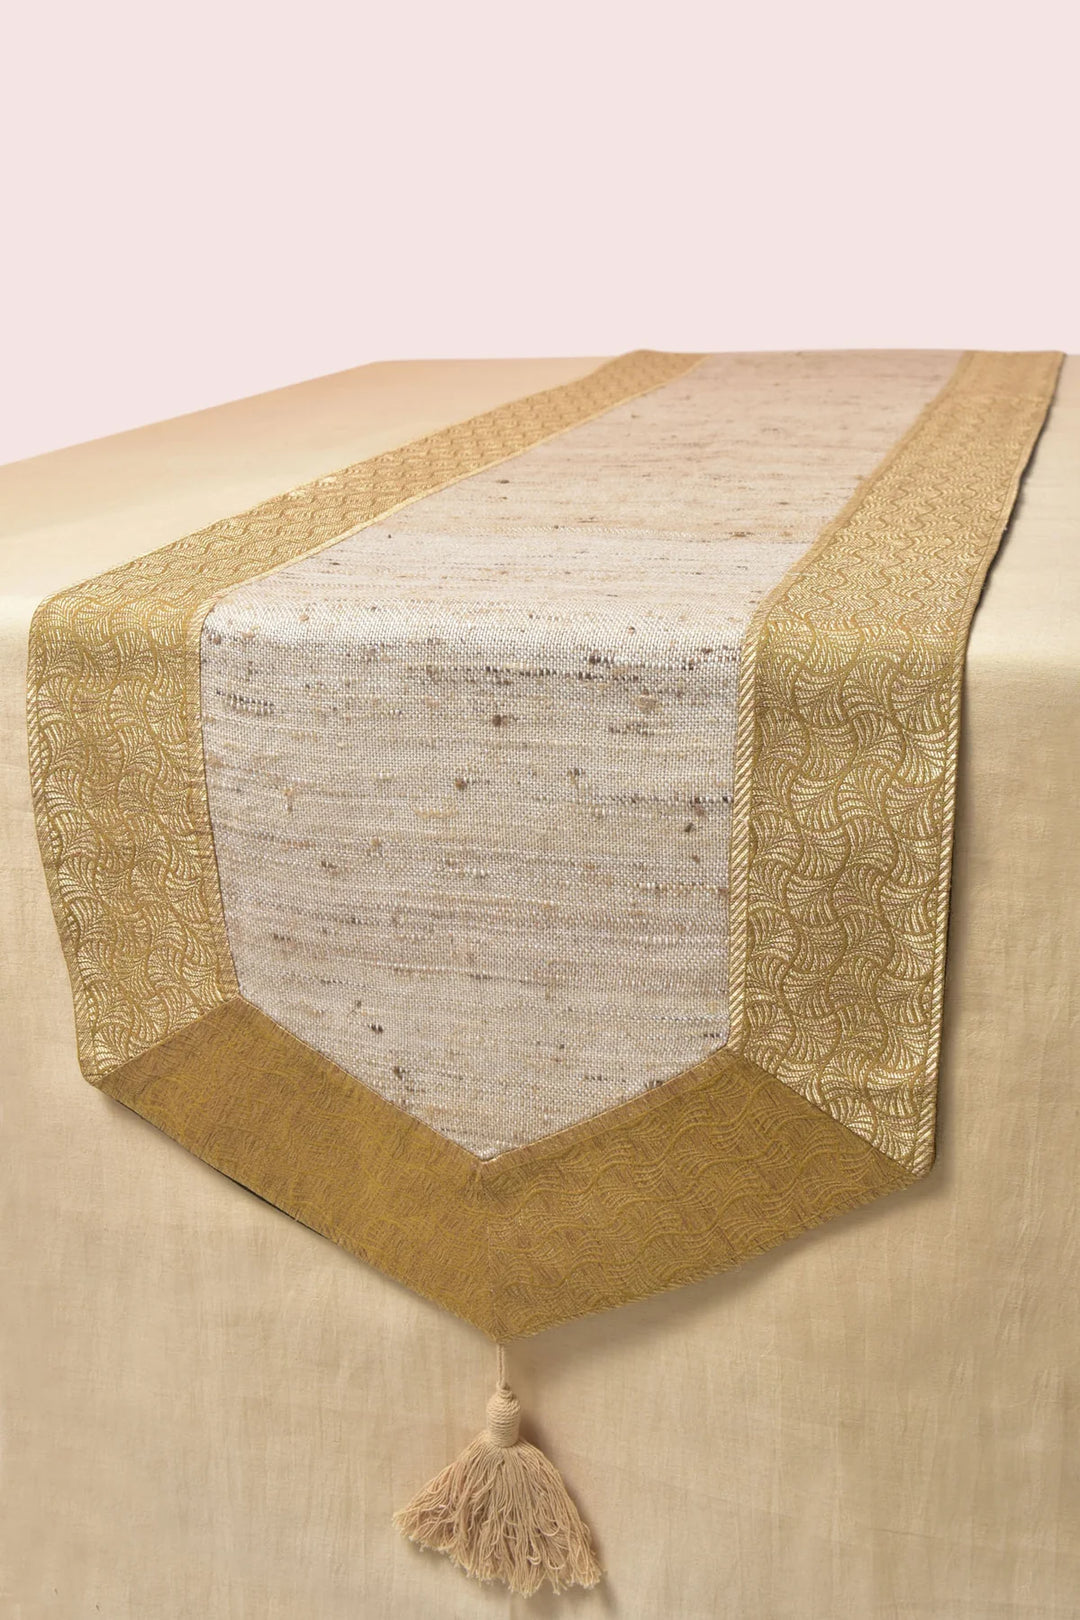 White and Gold Silk Table Runner, 80 x 14 - Classic Design | Navarchida Handwoven Table Runner - White & Gold